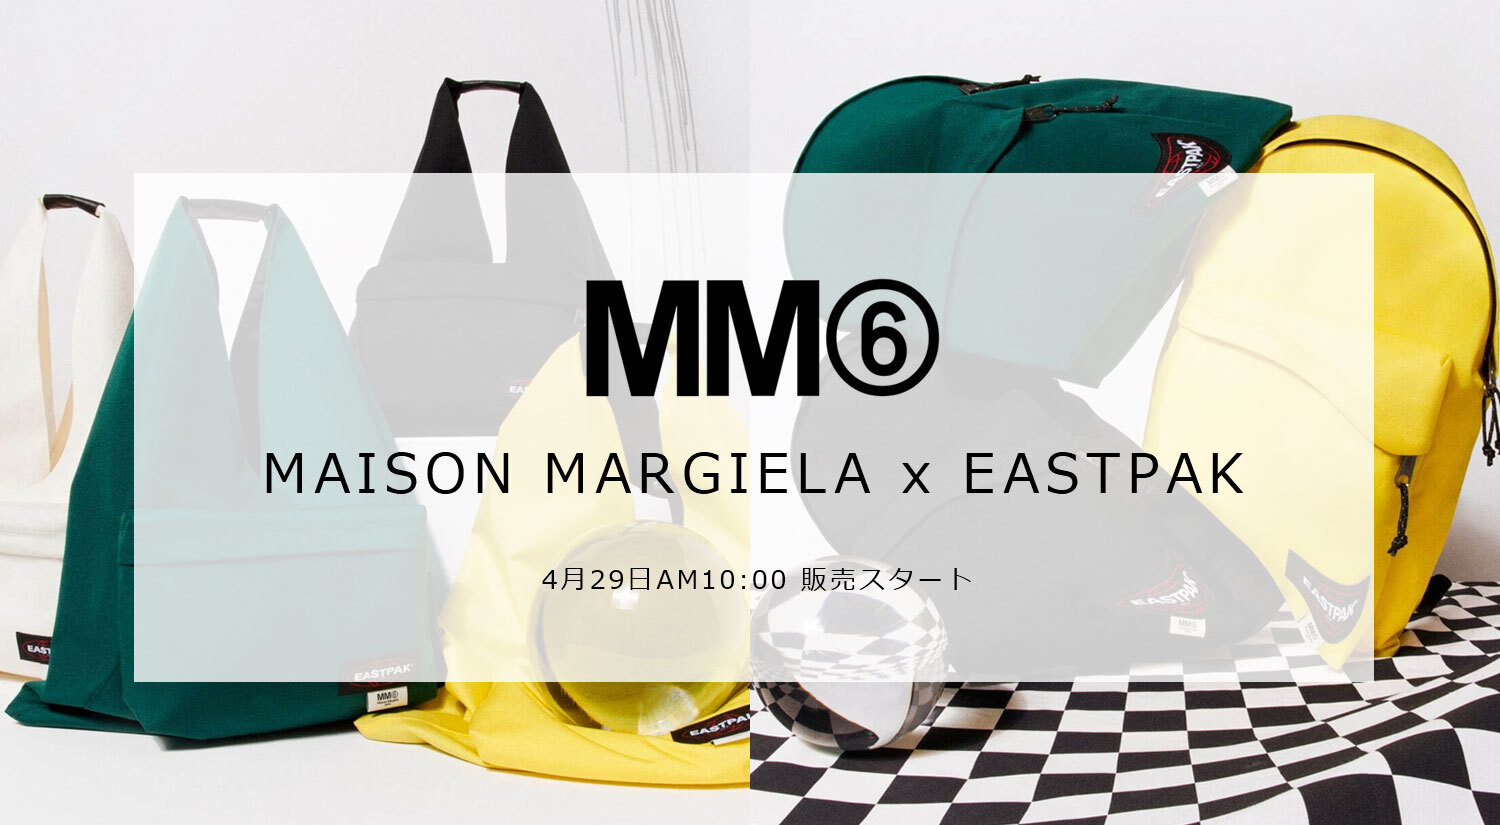 本日発売開始! MM6 Maison Margiela×Eastpak